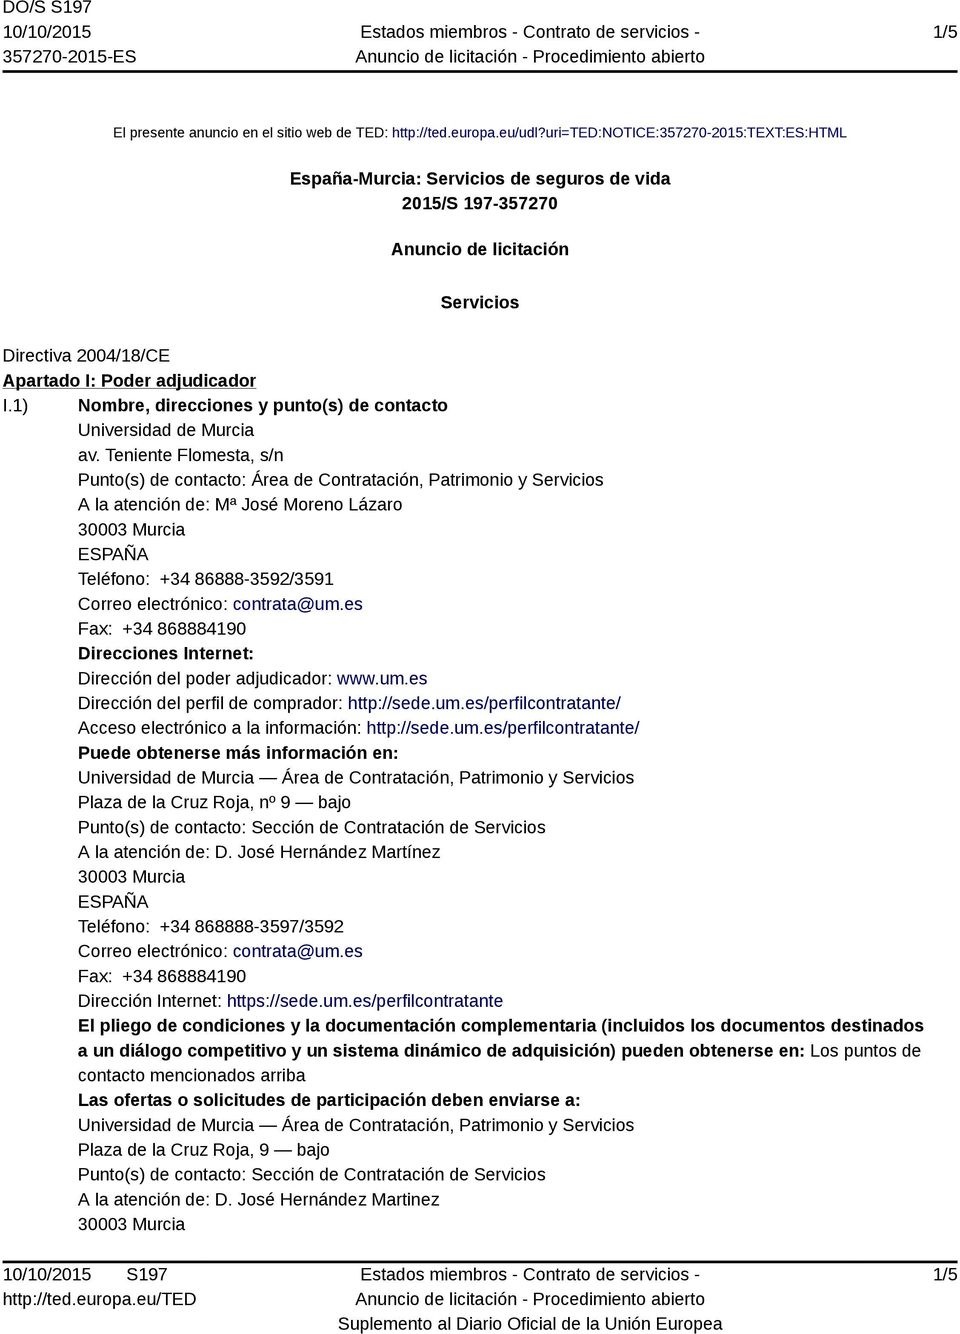 1) Nombre, direcciones y punto(s) de contacto Universidad de Murcia av.